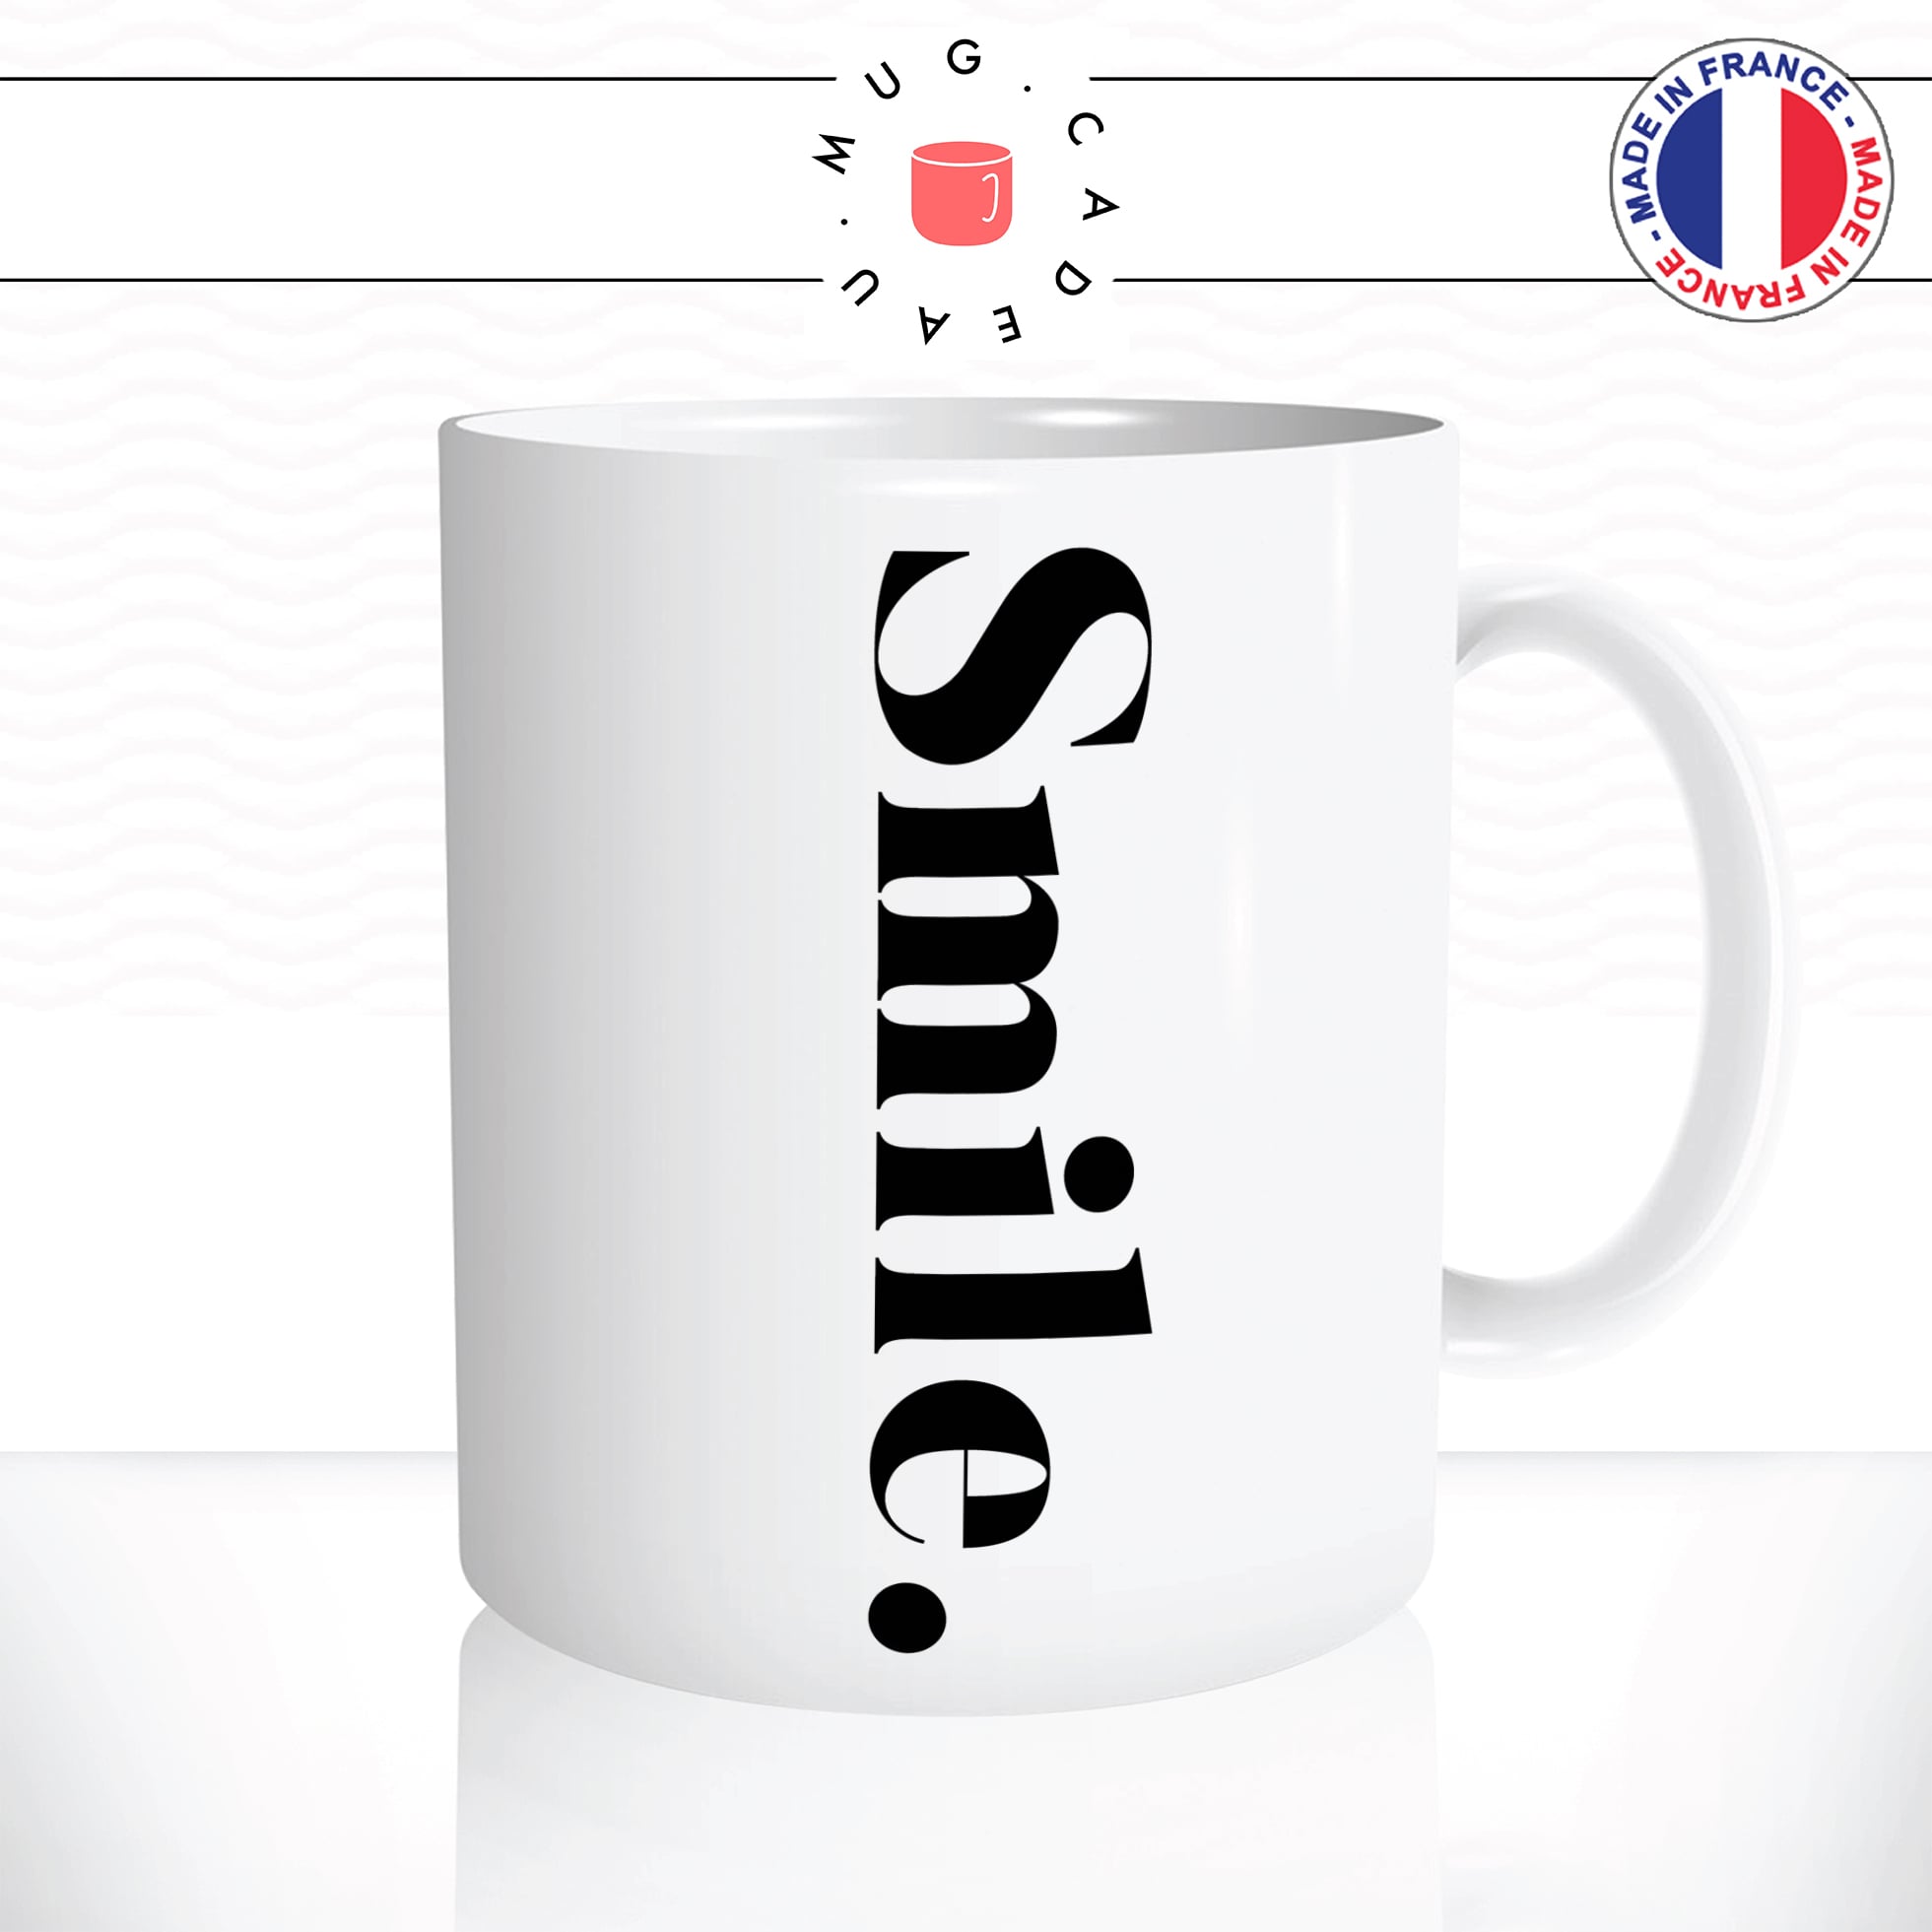 mug-tasse-smile-sourire-ecriture-calligraphie-humour-anglais-fun-café-thé-idée-cadeau-original-personnalisable2-min